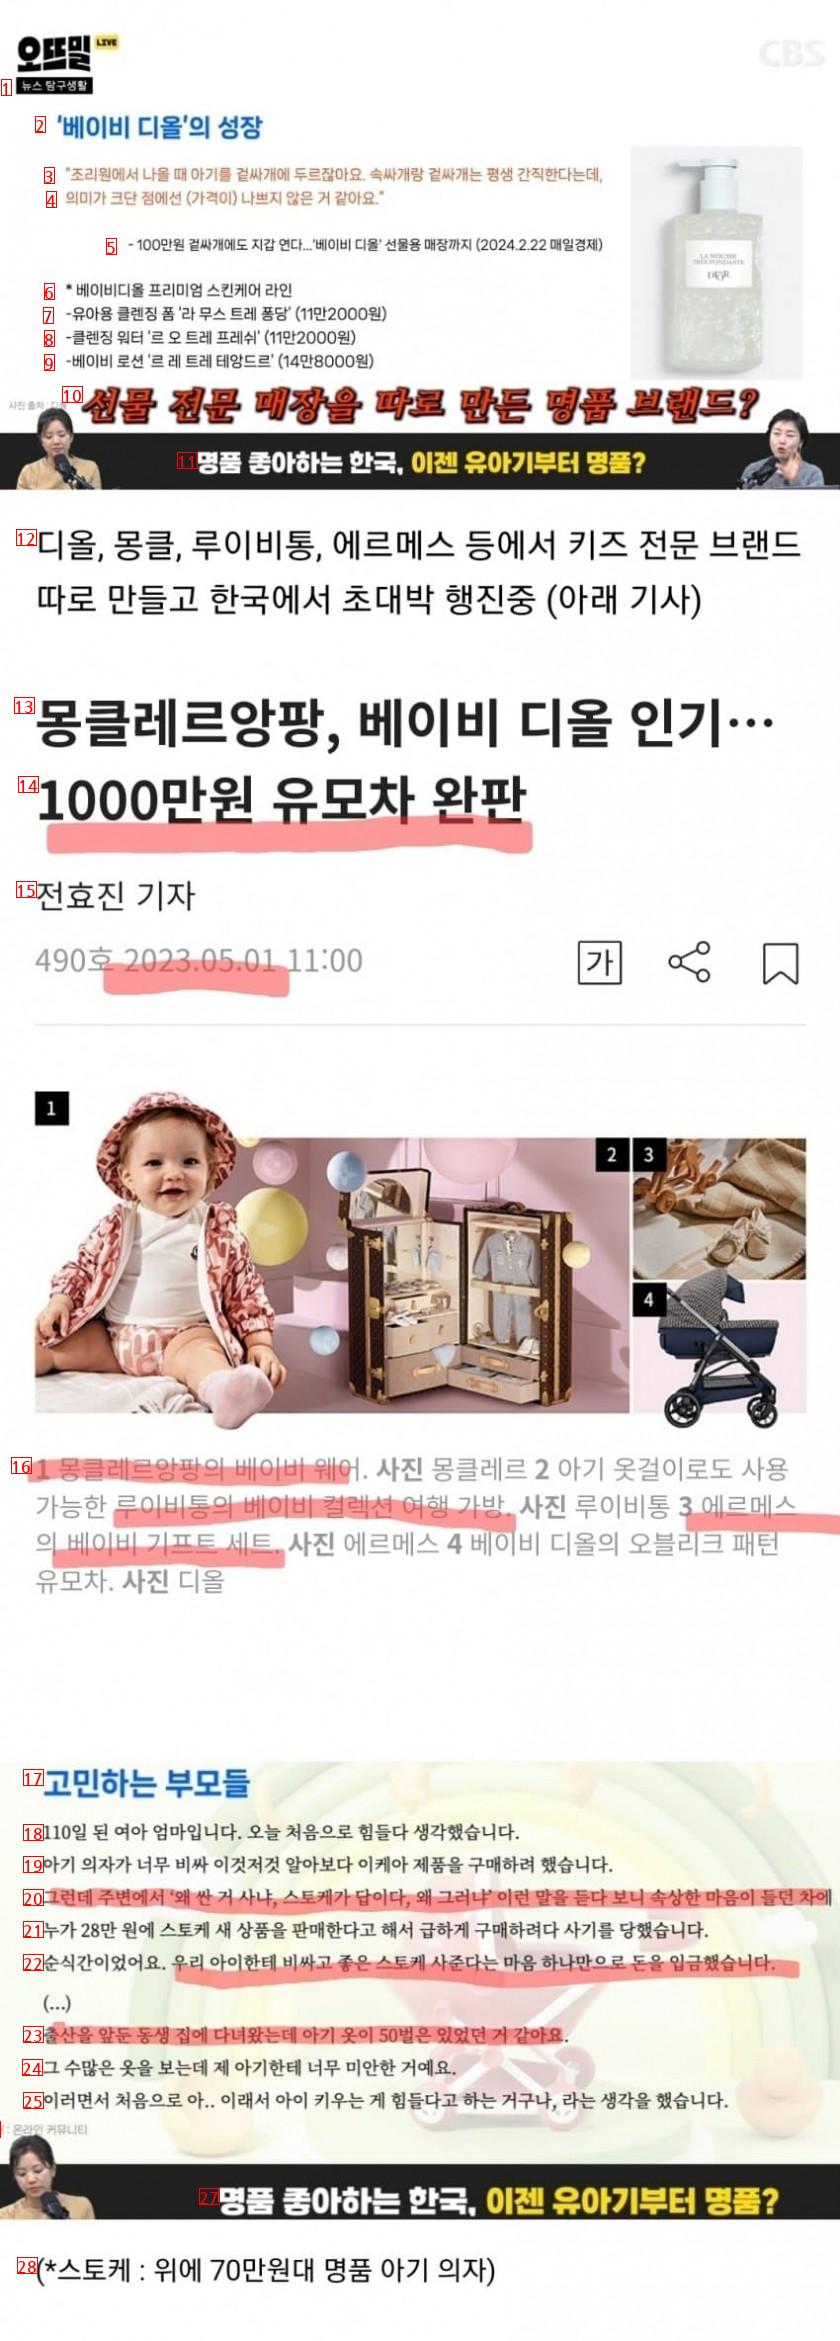 명품에 미쳐버린 한국 유아 용품 시장 근황